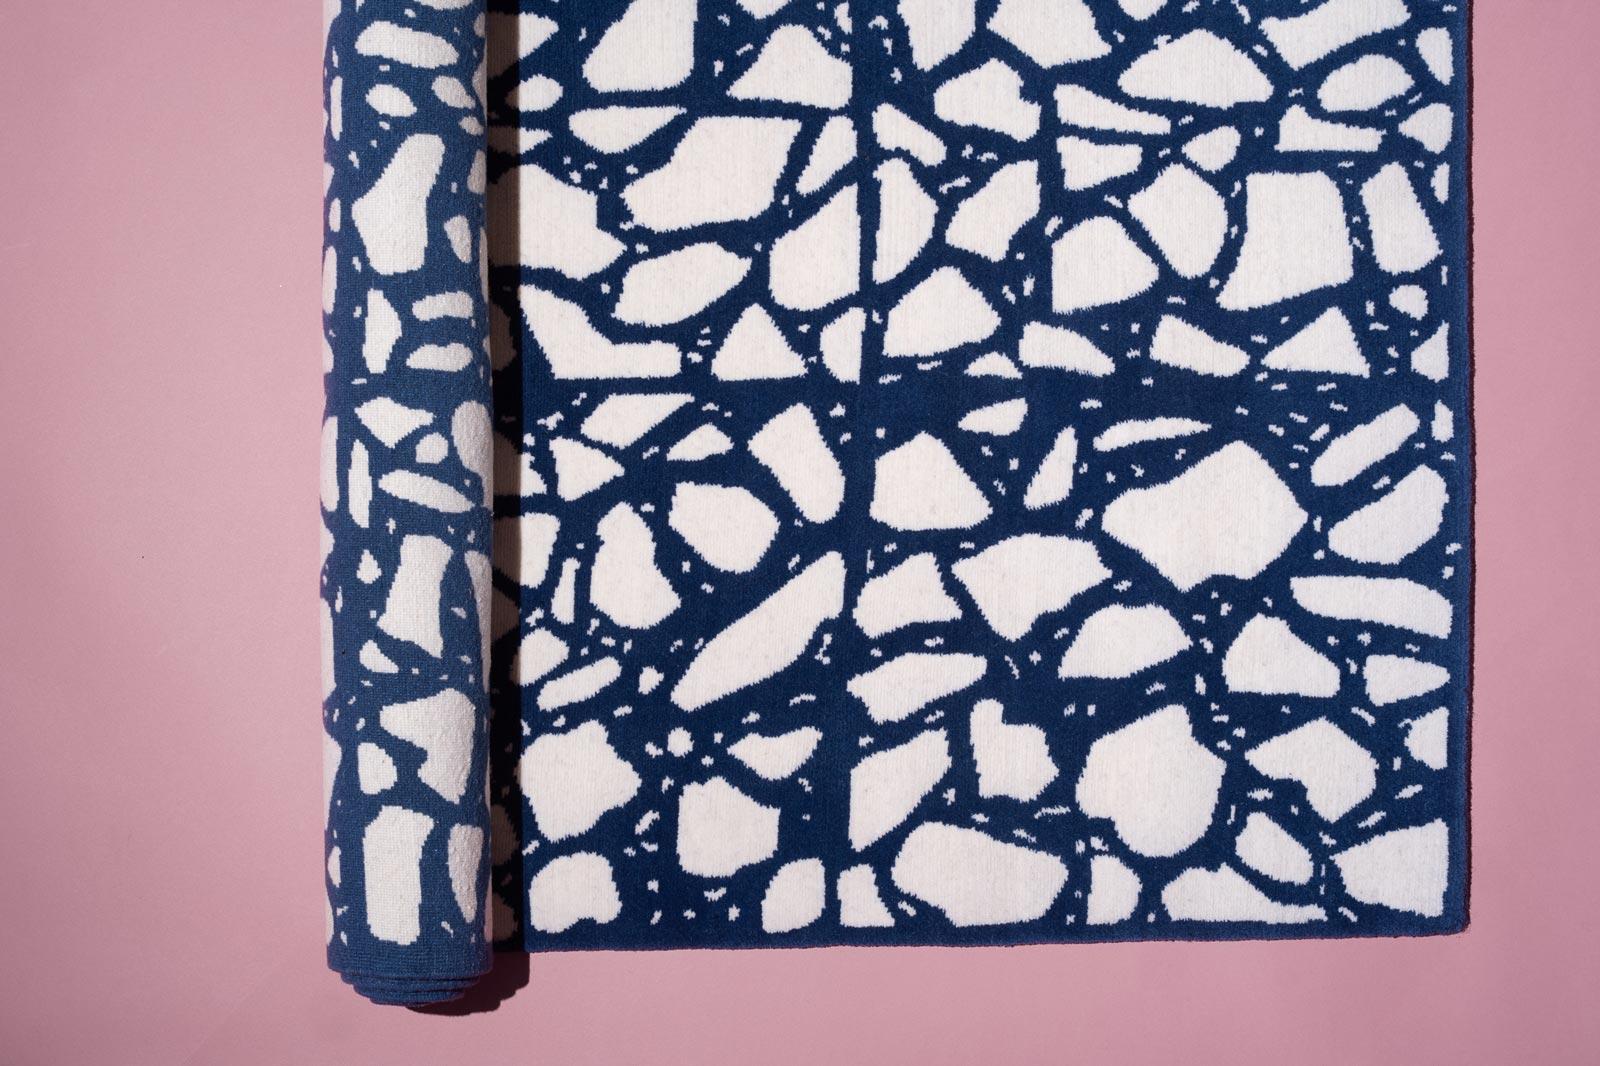 Mediterraneo ist eine Serie von Teppichen, die von den traditionellen italienischen Terrazzoböden inspiriert sind. Die Muster werden von Sergio selbst von Hand gezeichnet, anstatt ein Bild zu verwenden, was den Teppichen eine intimere und